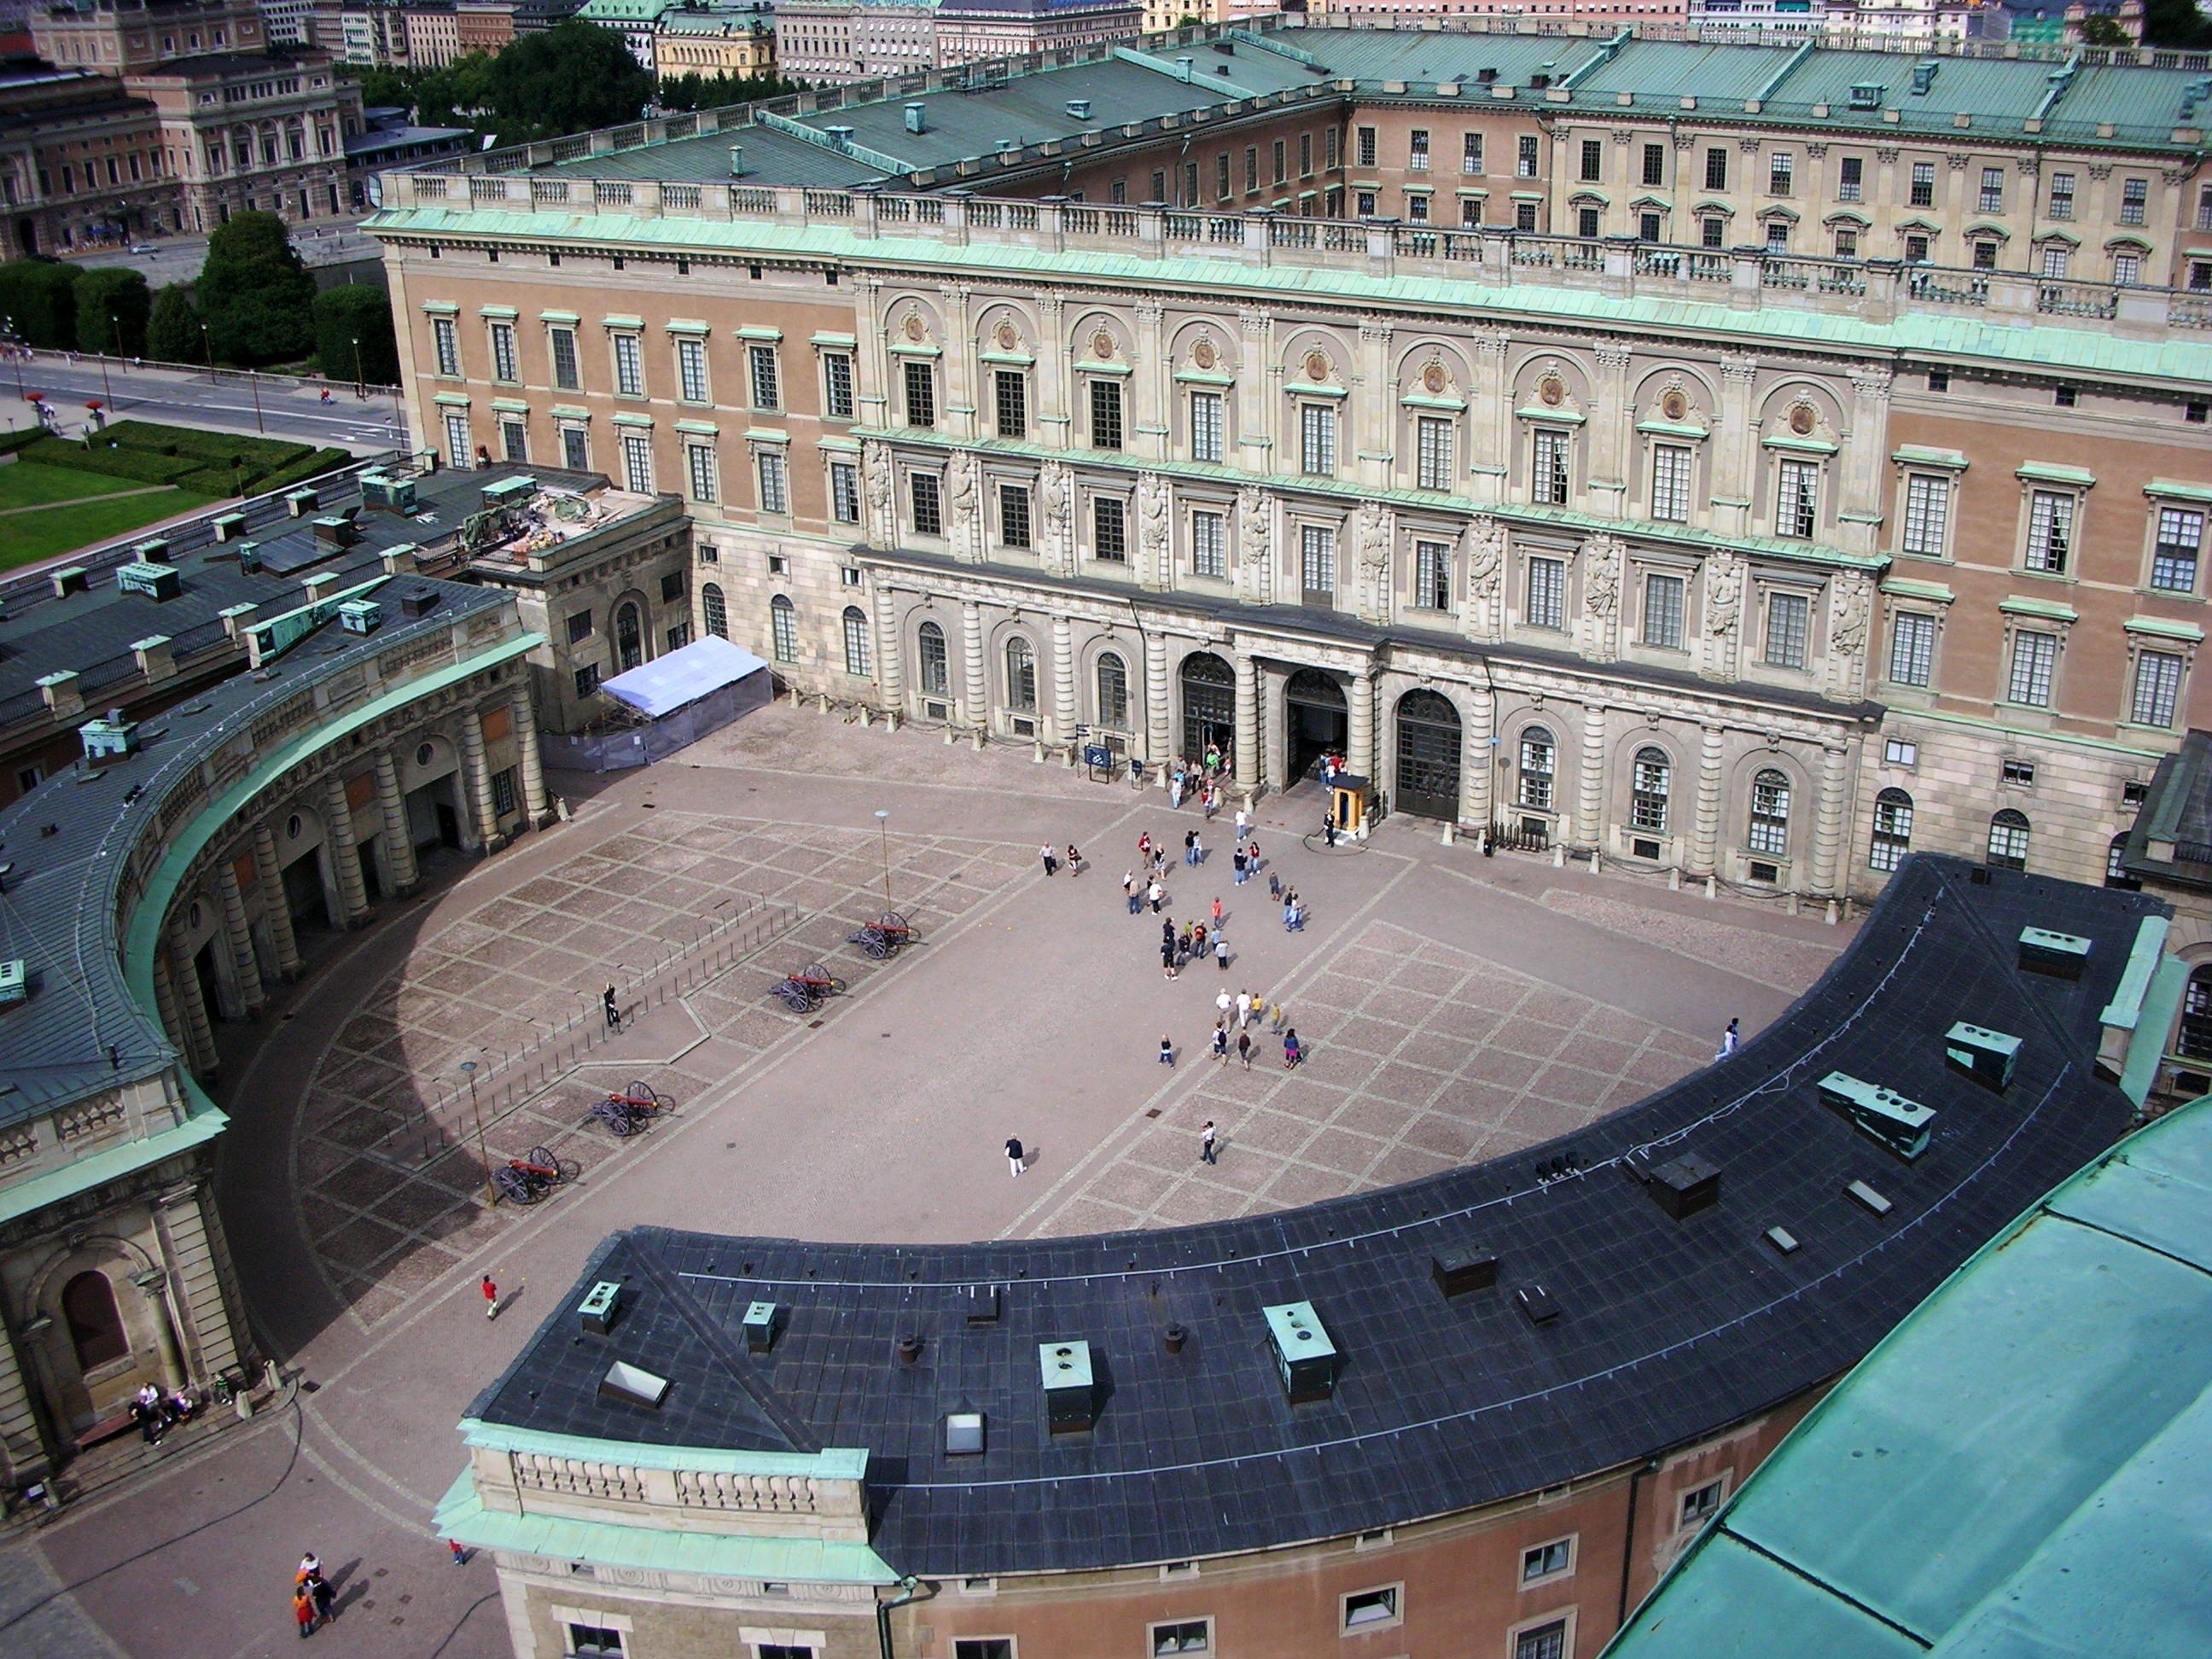 Στοκχόλμη - Παλάτι της Στοκχόλμηςbeb